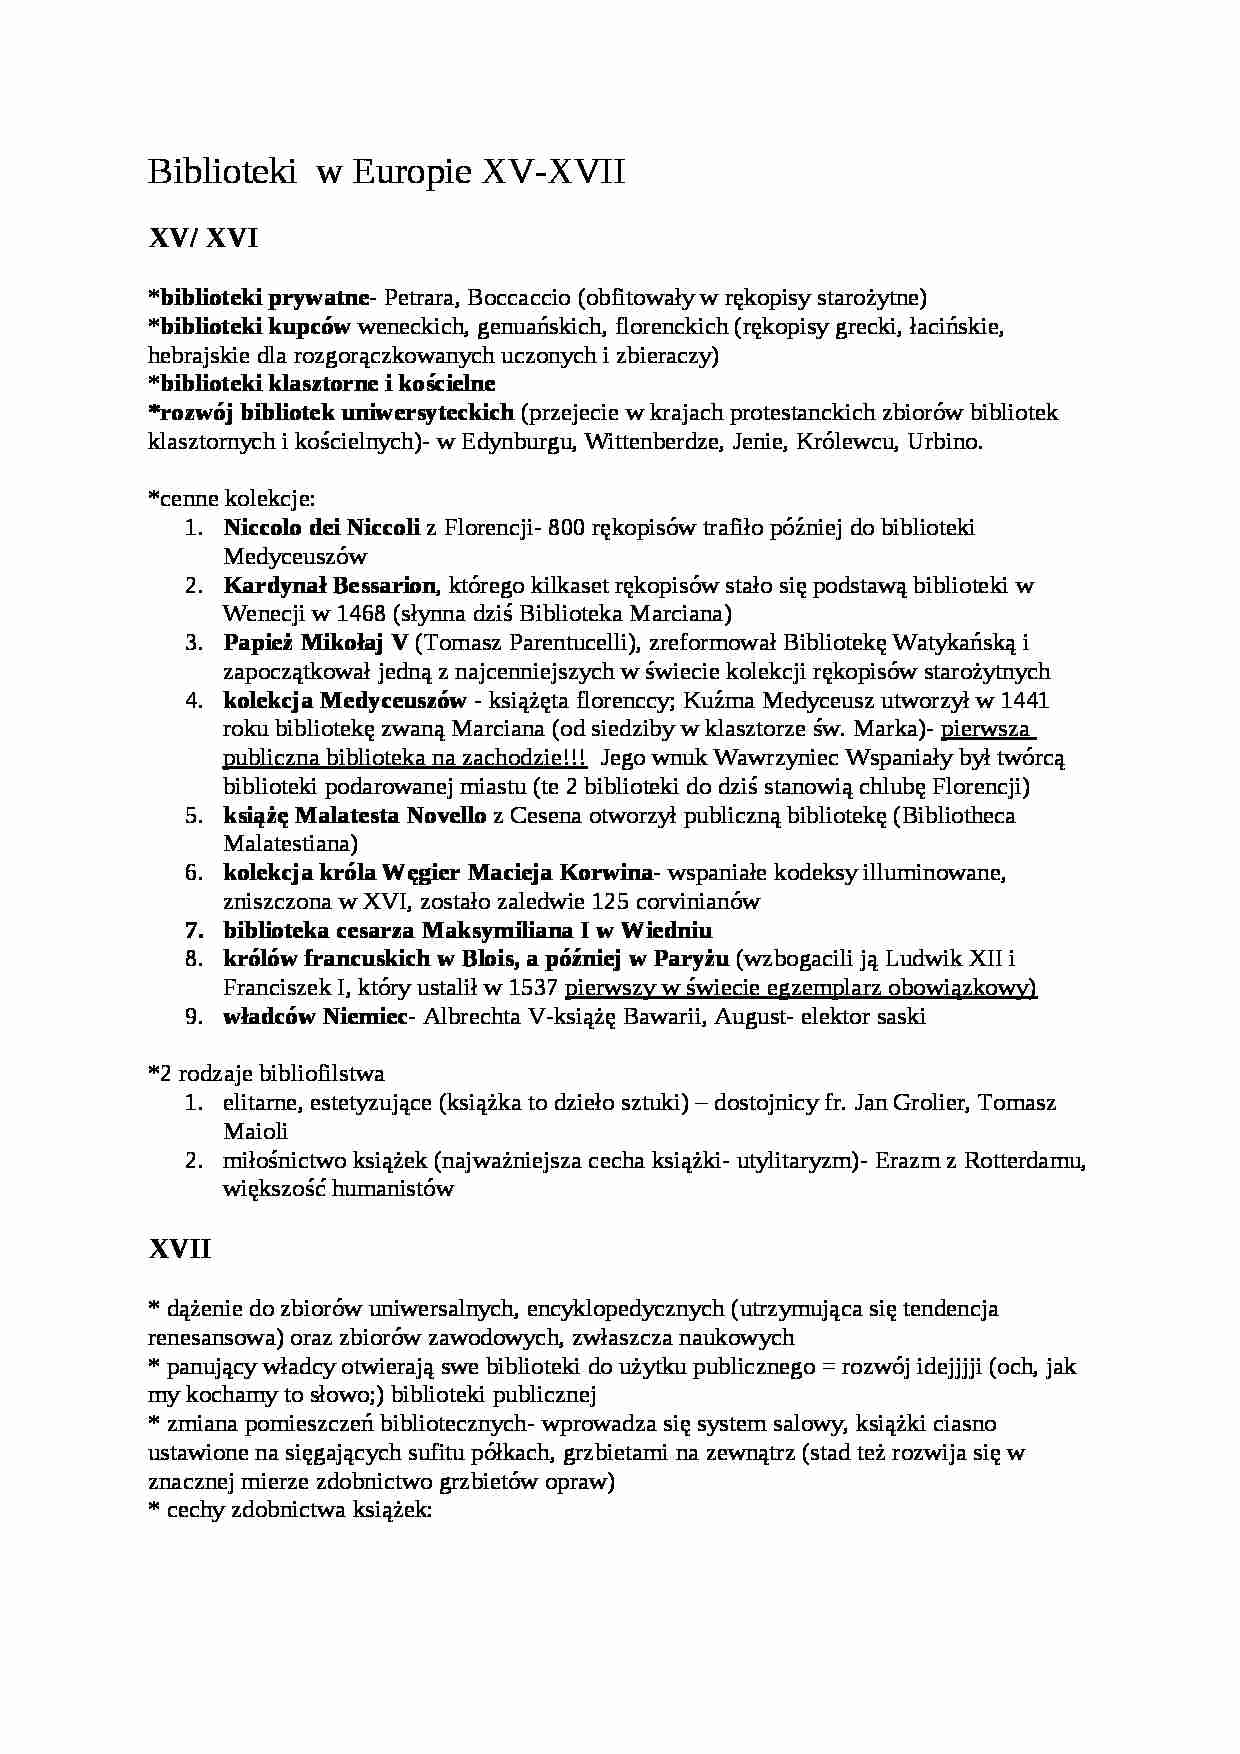 Biblioteki w Europie i w  Polsce XV- XVIII  - Biblioteka Królewska - strona 1